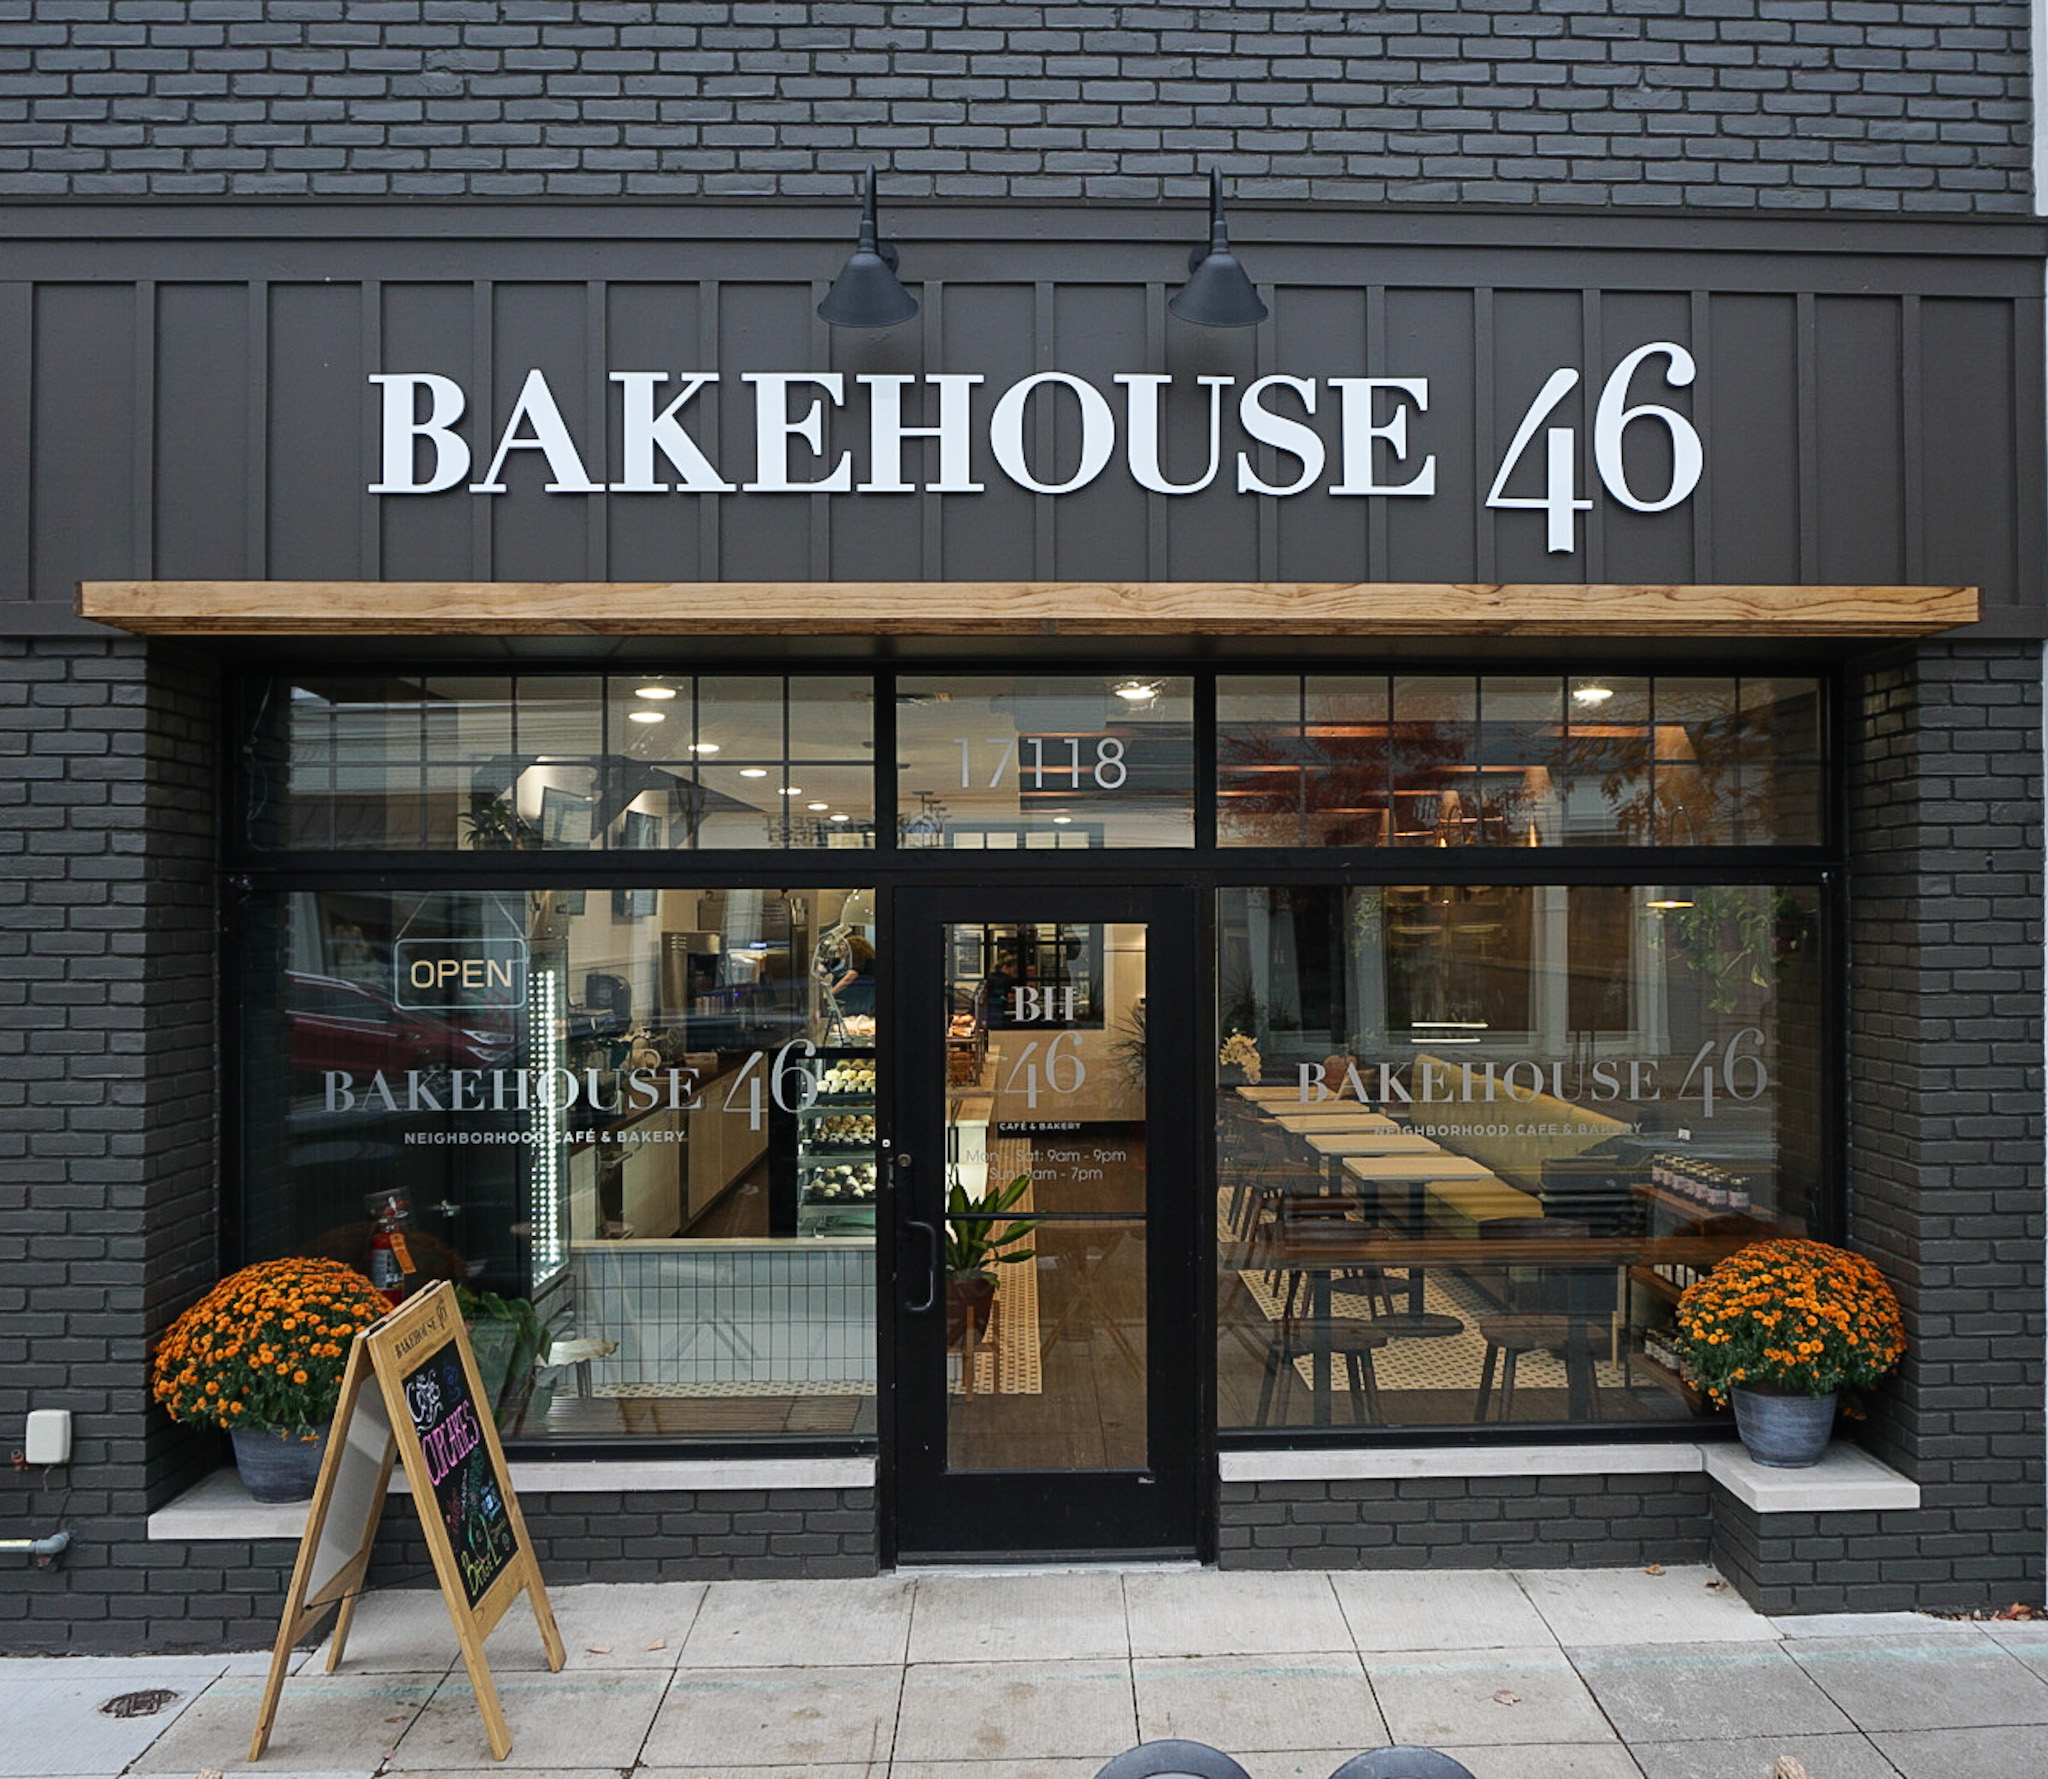 Bakehouse 46 Journal